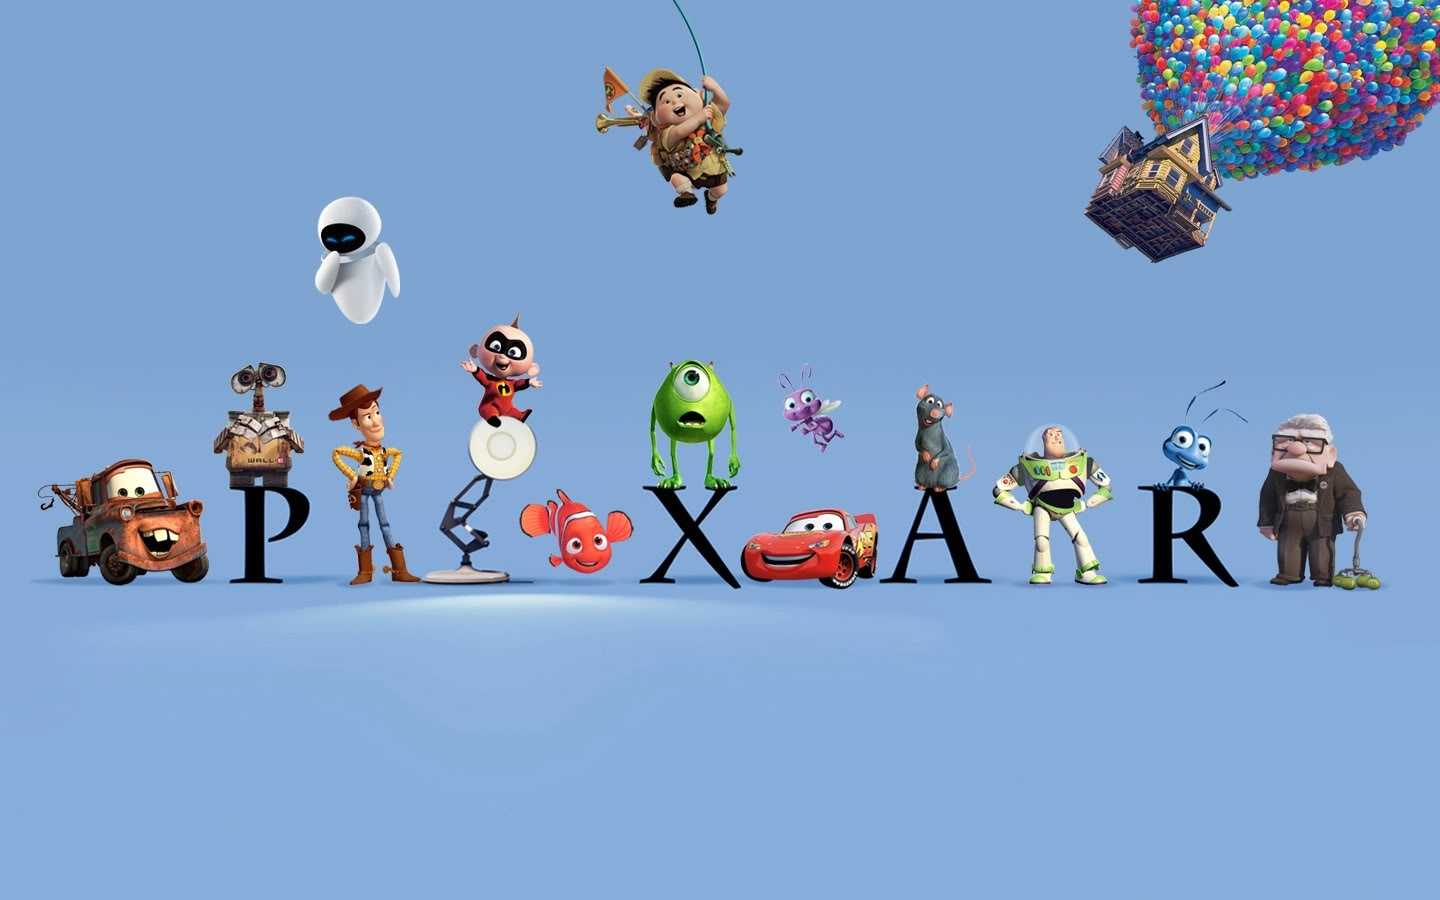 皮克斯动画工作室(pixar animation studios)于1986年正式成立,至今